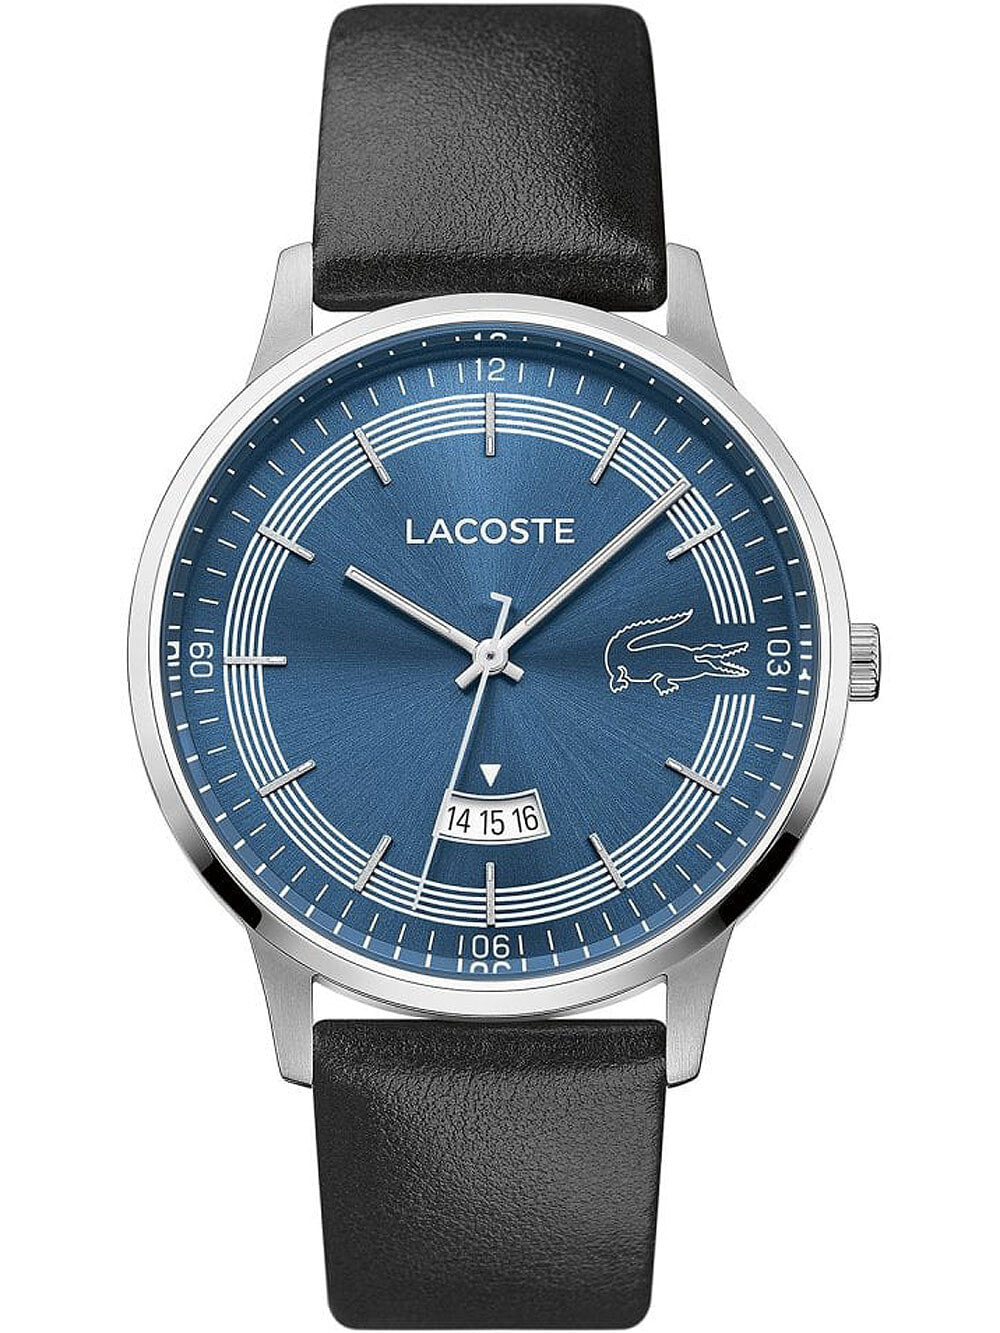 Мужские наручные часы с черным кожаным ремешком Lacoste 2011034 Madrid mens 41mm 5ATM — купить недорого с доставкой, 794159